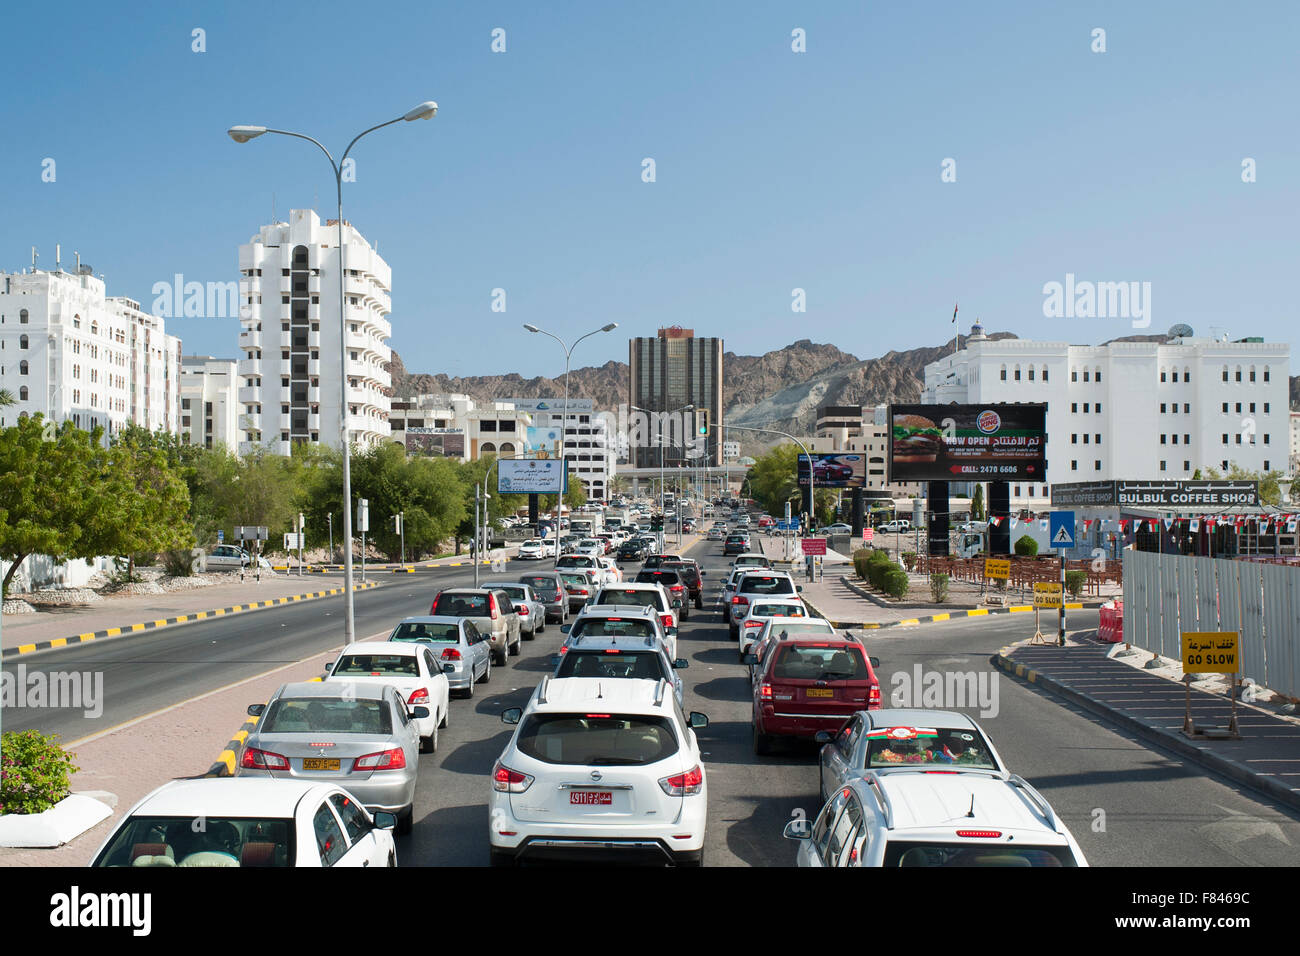 Le trafic sur l'avenue principale de Ruwi, district dans la région de Mascate, la capitale du Sultanat d'Oman. Banque D'Images